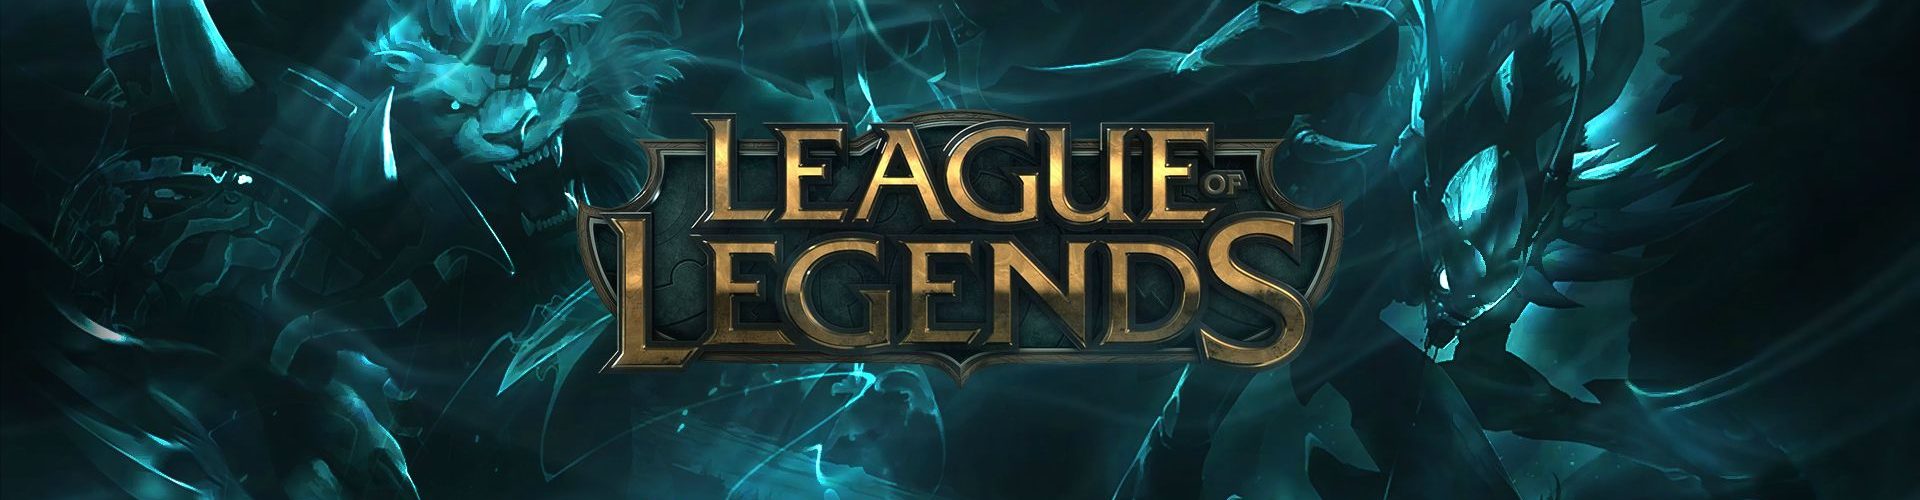 Lol League Of Legends